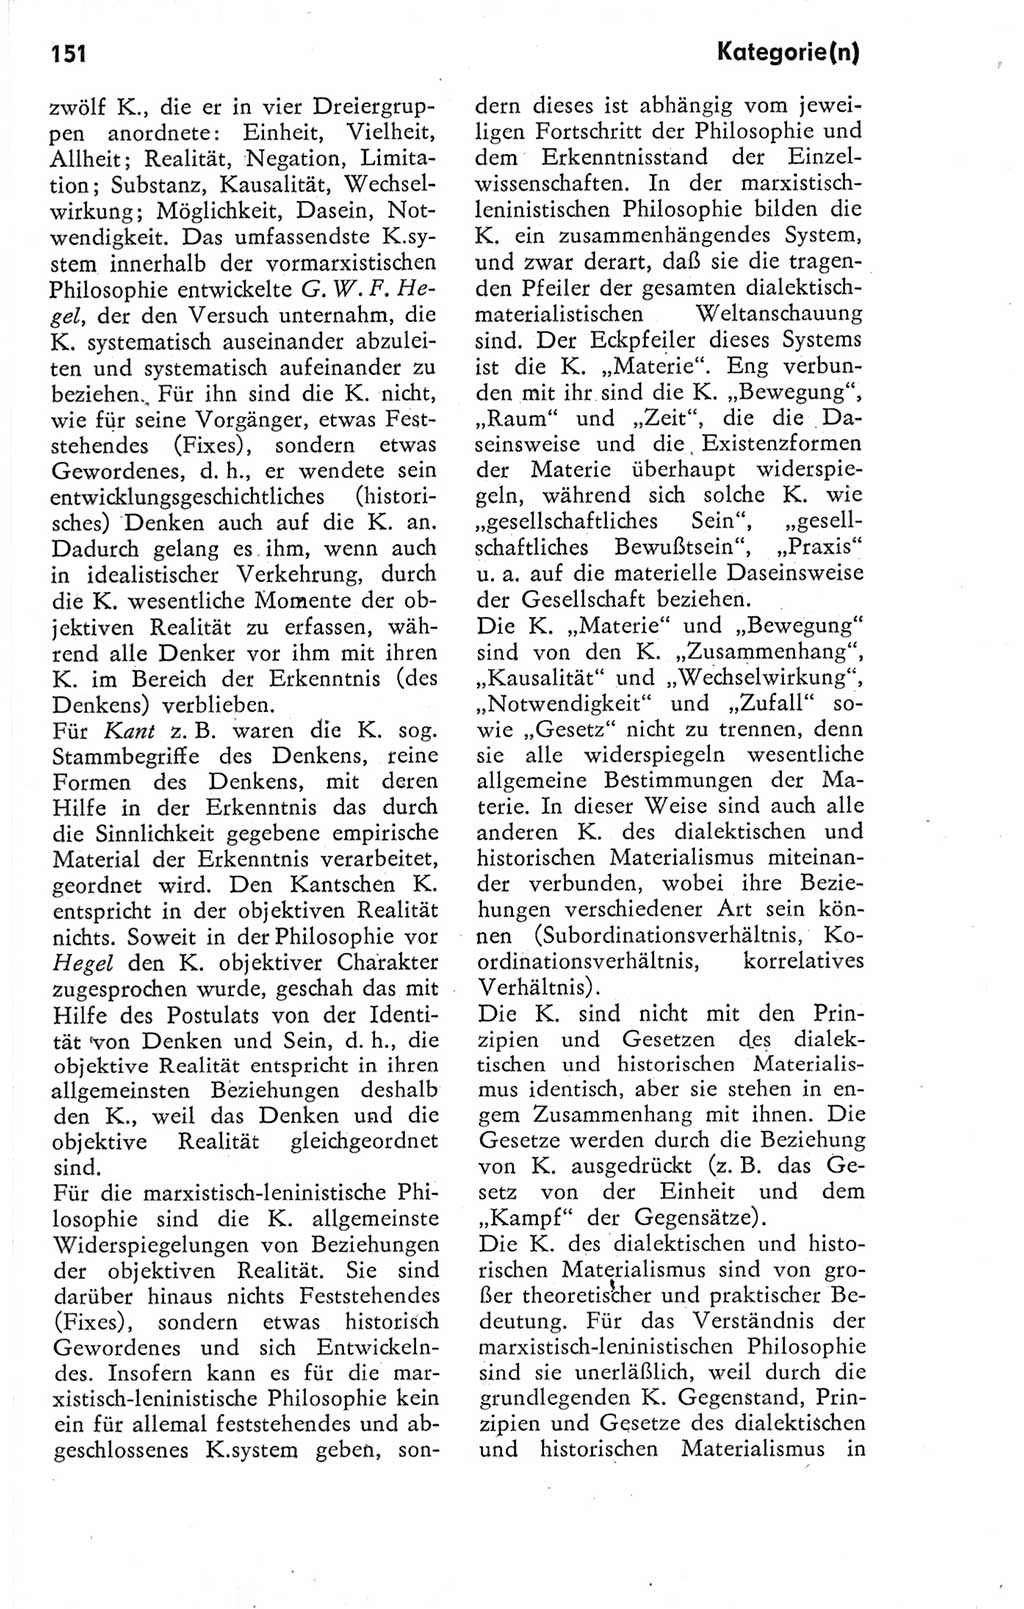 Kleines Wörterbuch der marxistisch-leninistischen Philosophie [Deutsche Demokratische Republik (DDR)] 1974, Seite 151 (Kl. Wb. ML Phil. DDR 1974, S. 151)